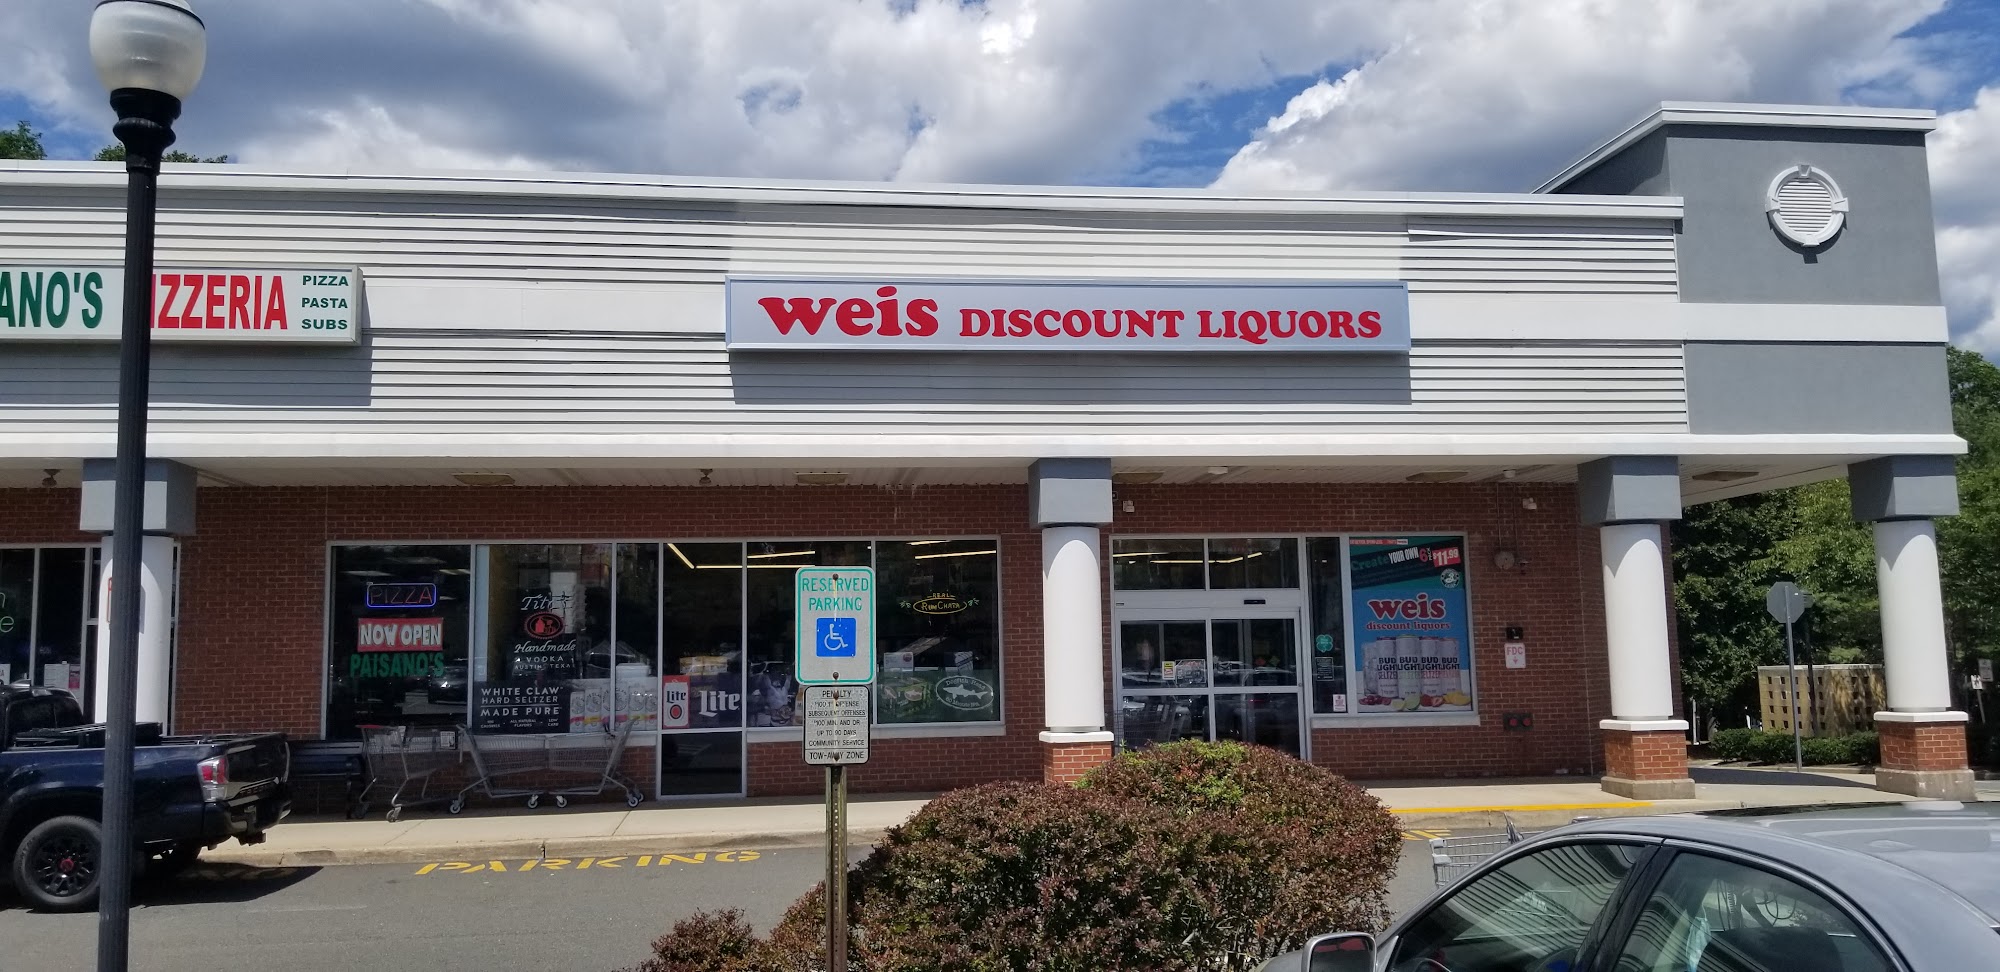 Weis Discount Liquors